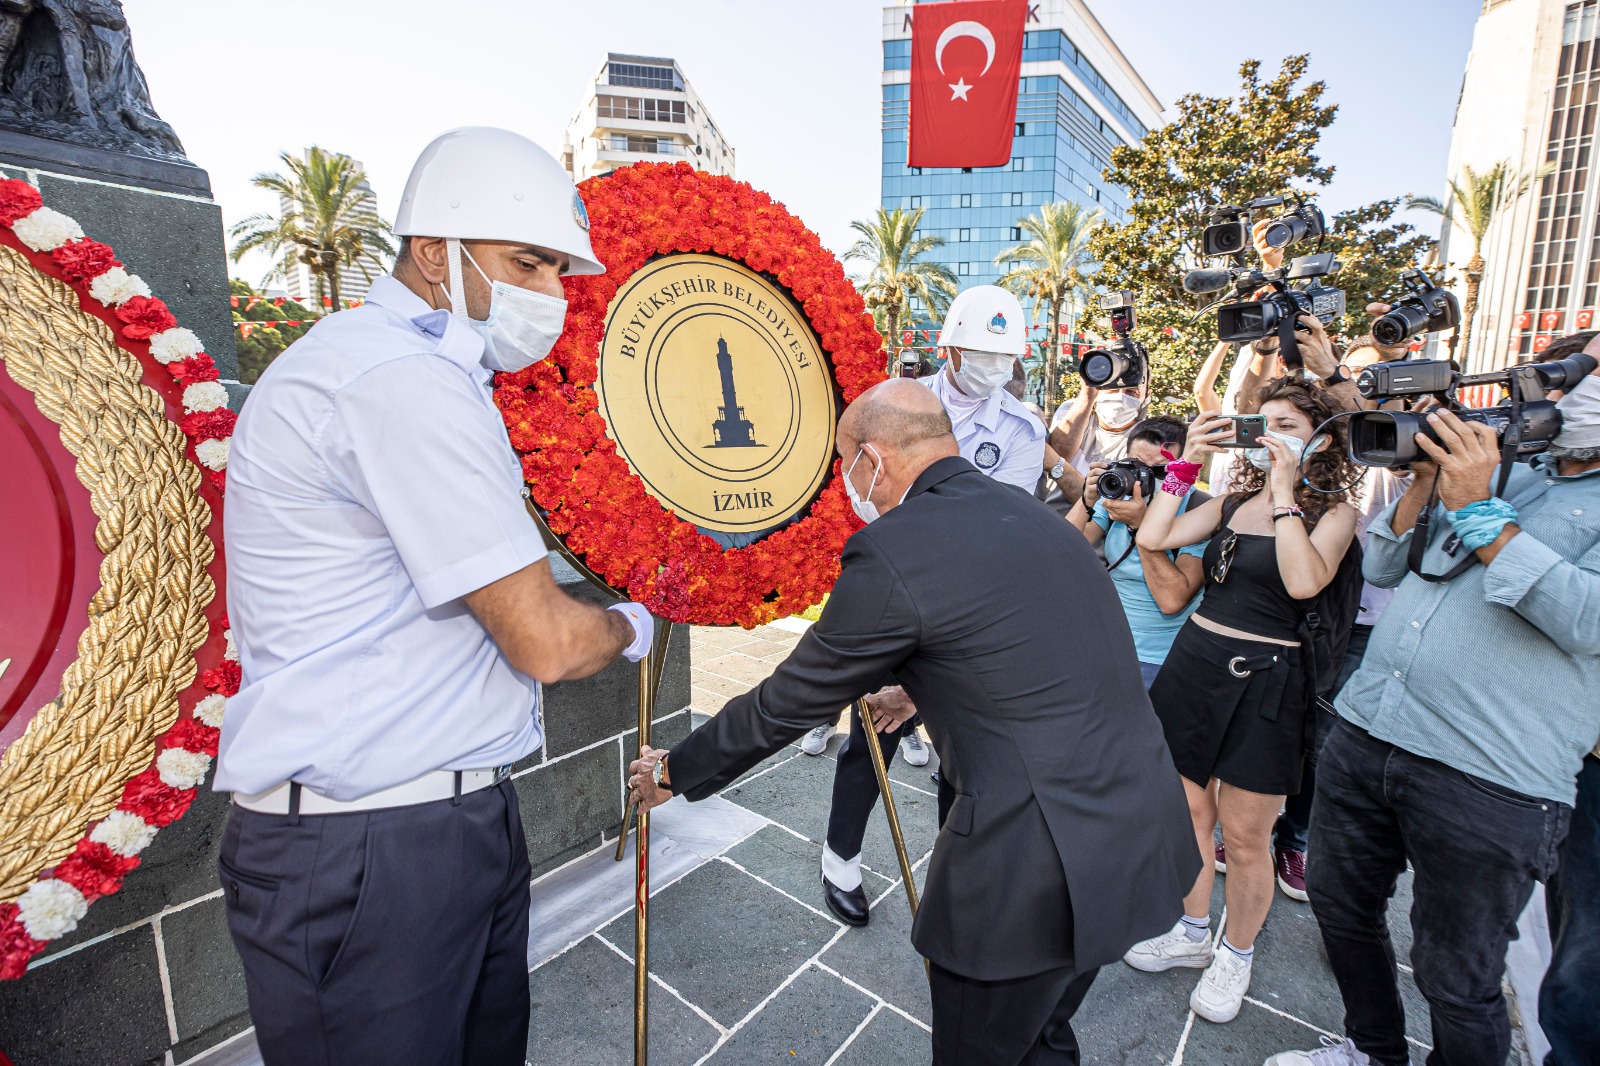 başkan 30 Ağustos Zafer Bayramı İzmir’de coşkuyla kutlanıyor. Zaferle sonuçlanan Büyük Taarruz’un 99. yıldönümü kutlamaları Cumhuriyet Meydanı'nda düzenlenen resmi törenle başladı. Törene İzmir Büyükşehir Belediye Başkanı Tunç Soyer de katıldı.